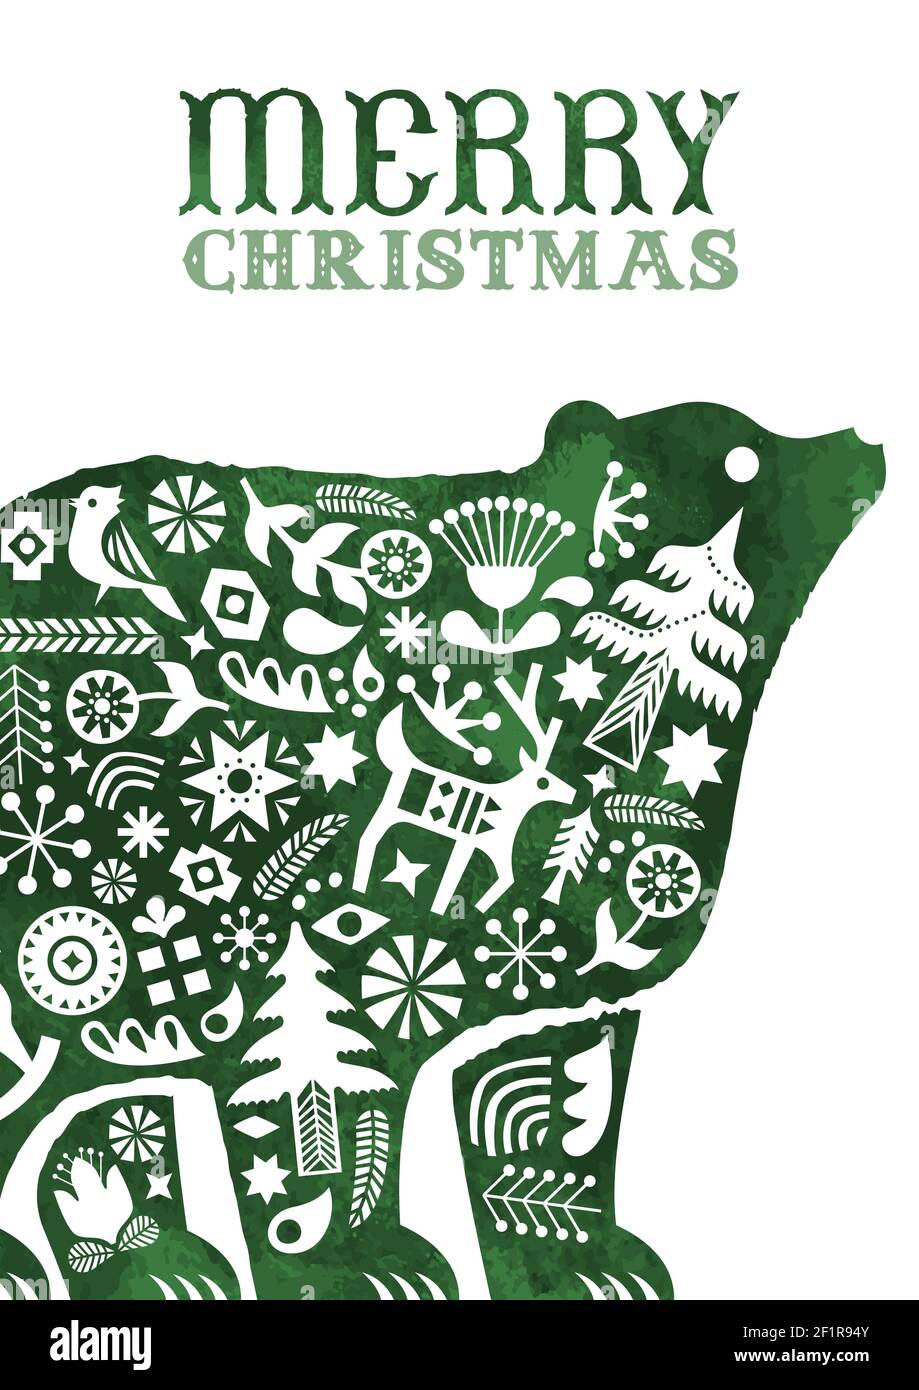 Frohe Weihnachten Grußkarte, vintage skandinavische Kunst Dekoration innen Aquarell Pferd Spielzeug für Urlaub Einladung oder saisonale Grüße. Enthält Stock Vektor